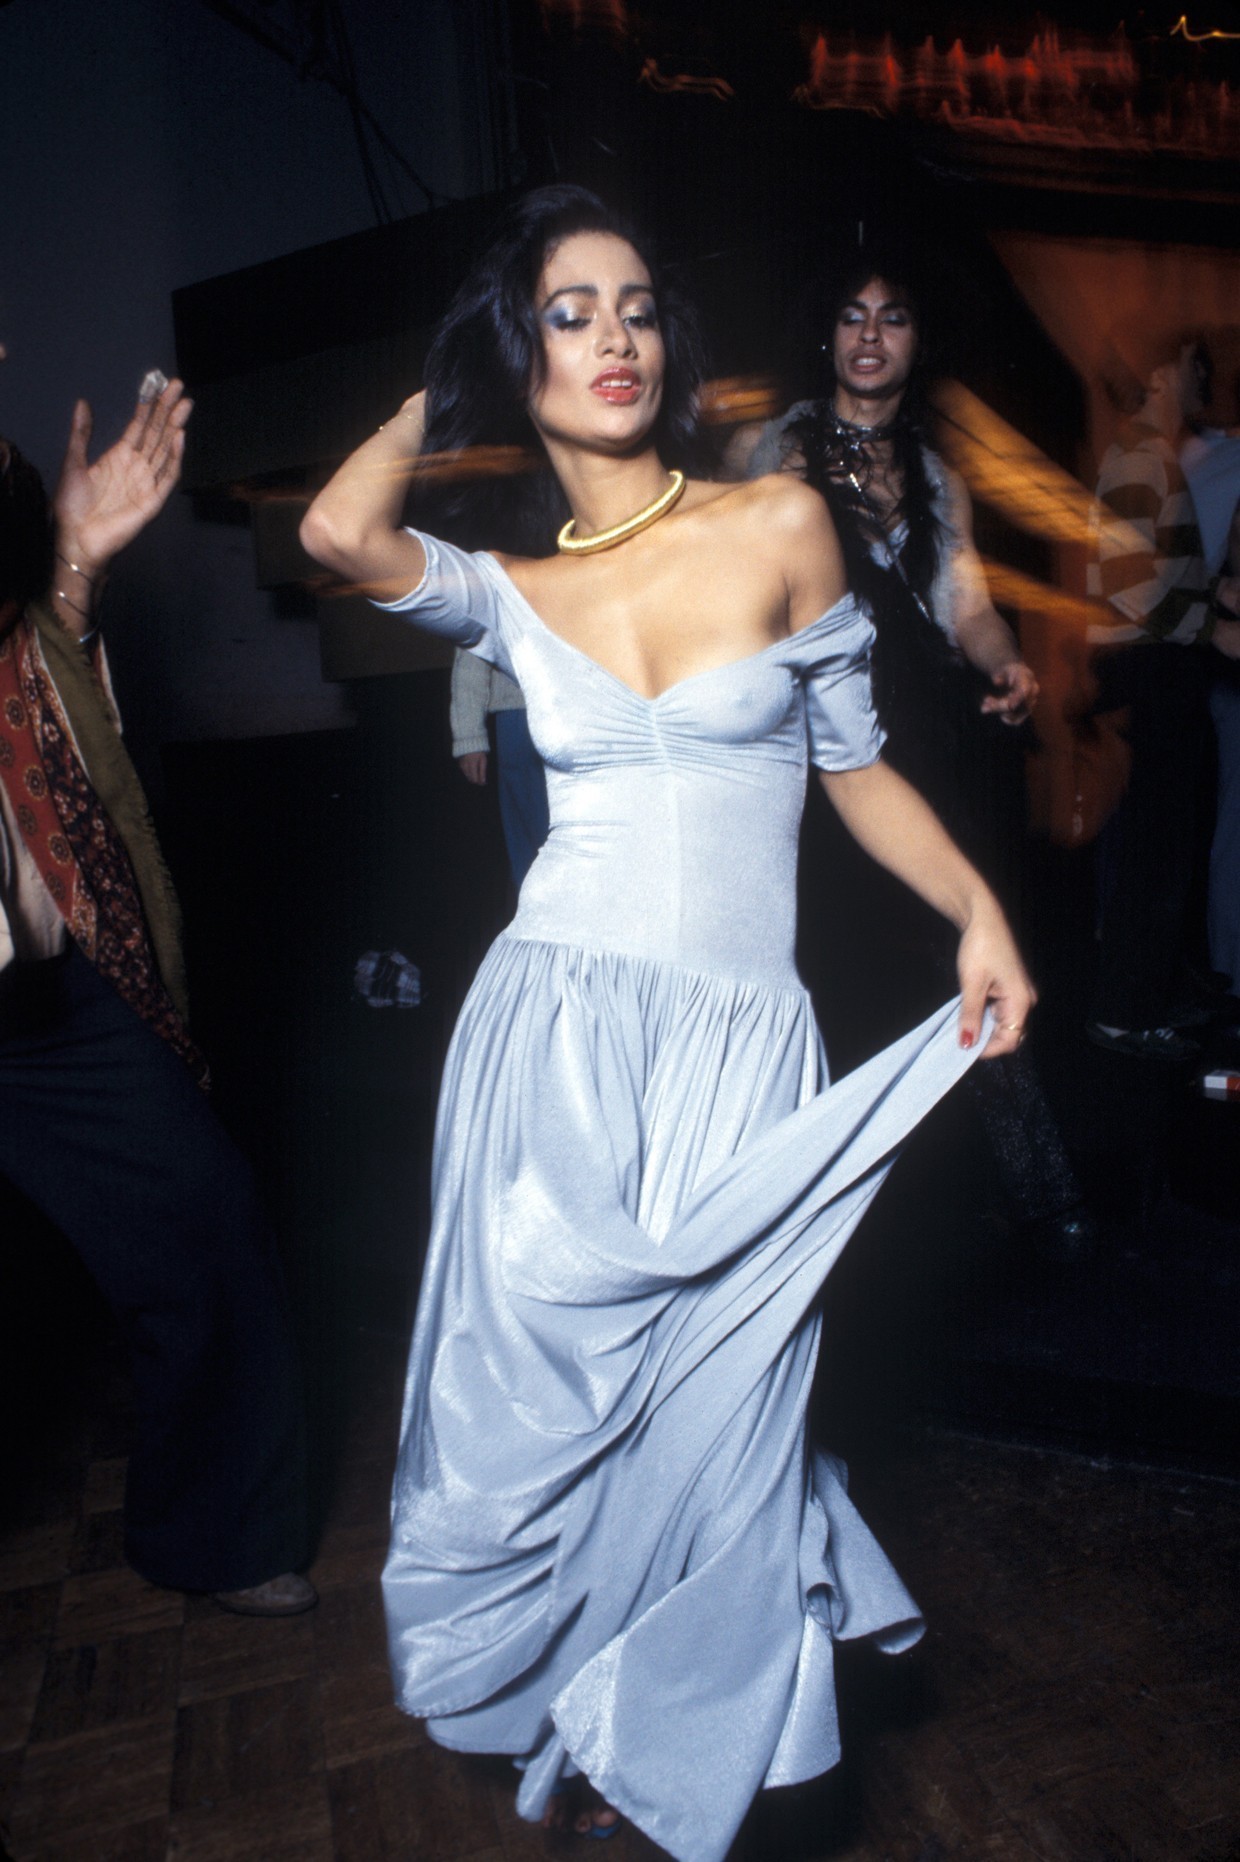 Женщина танцует в Студия 54, Нью-Йорк 1977 год. Фотограф Уоринг Эббот